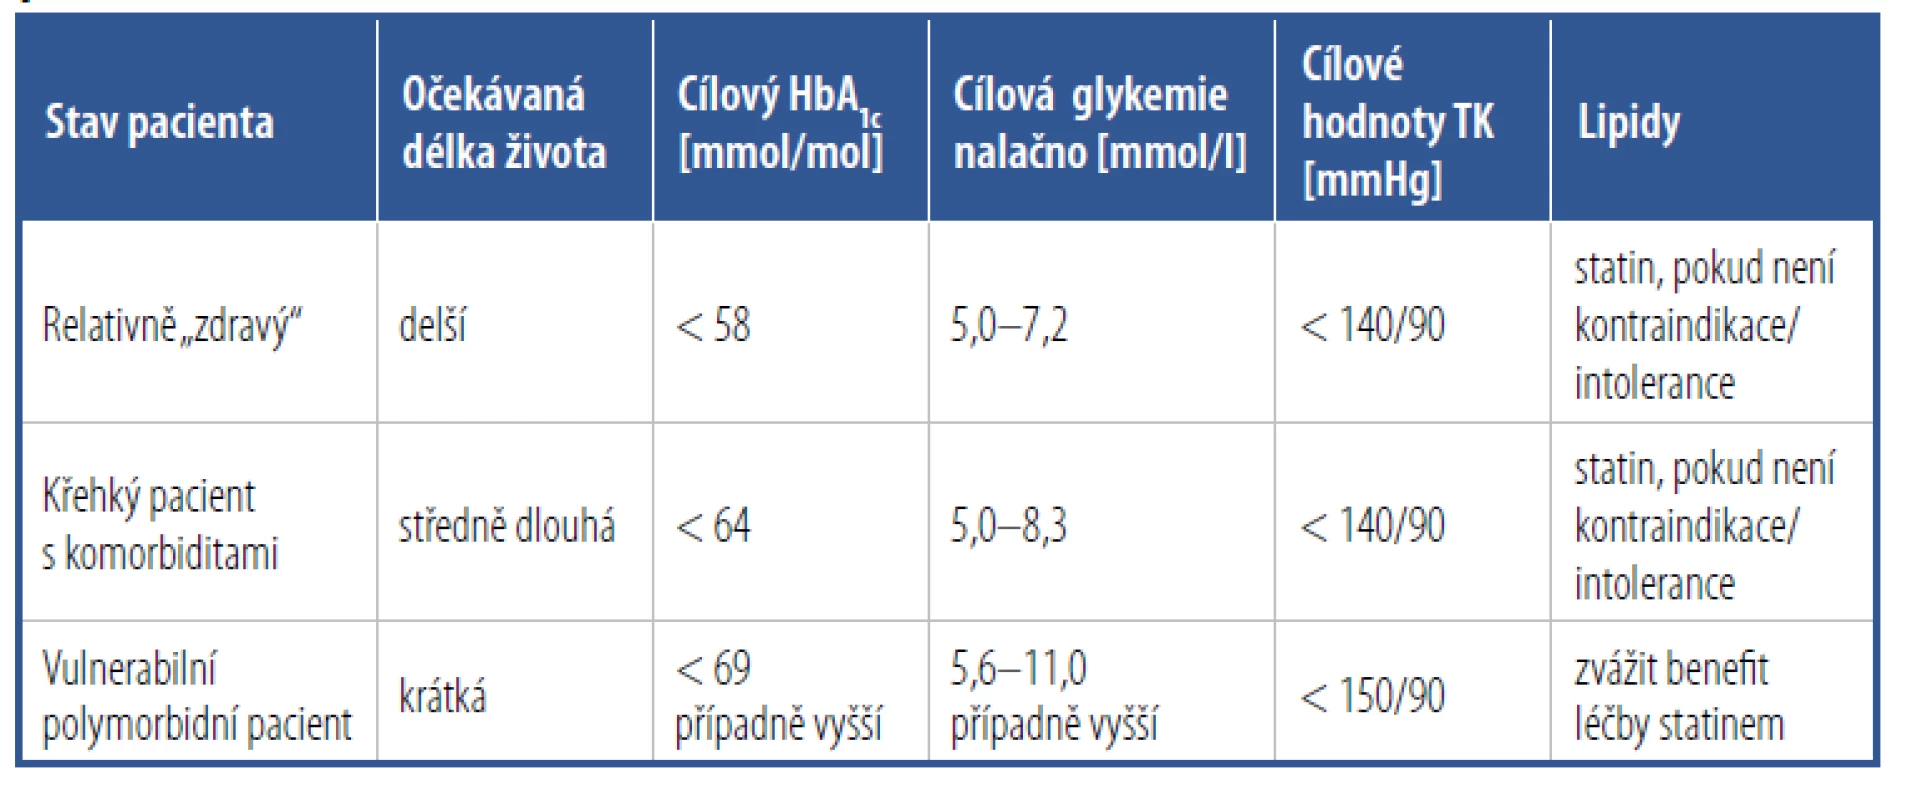 Cílové hodnoty kompenzace diabetu, krevního tlaku a dyslipidemie u starších
pacientů s diabetes mellitus